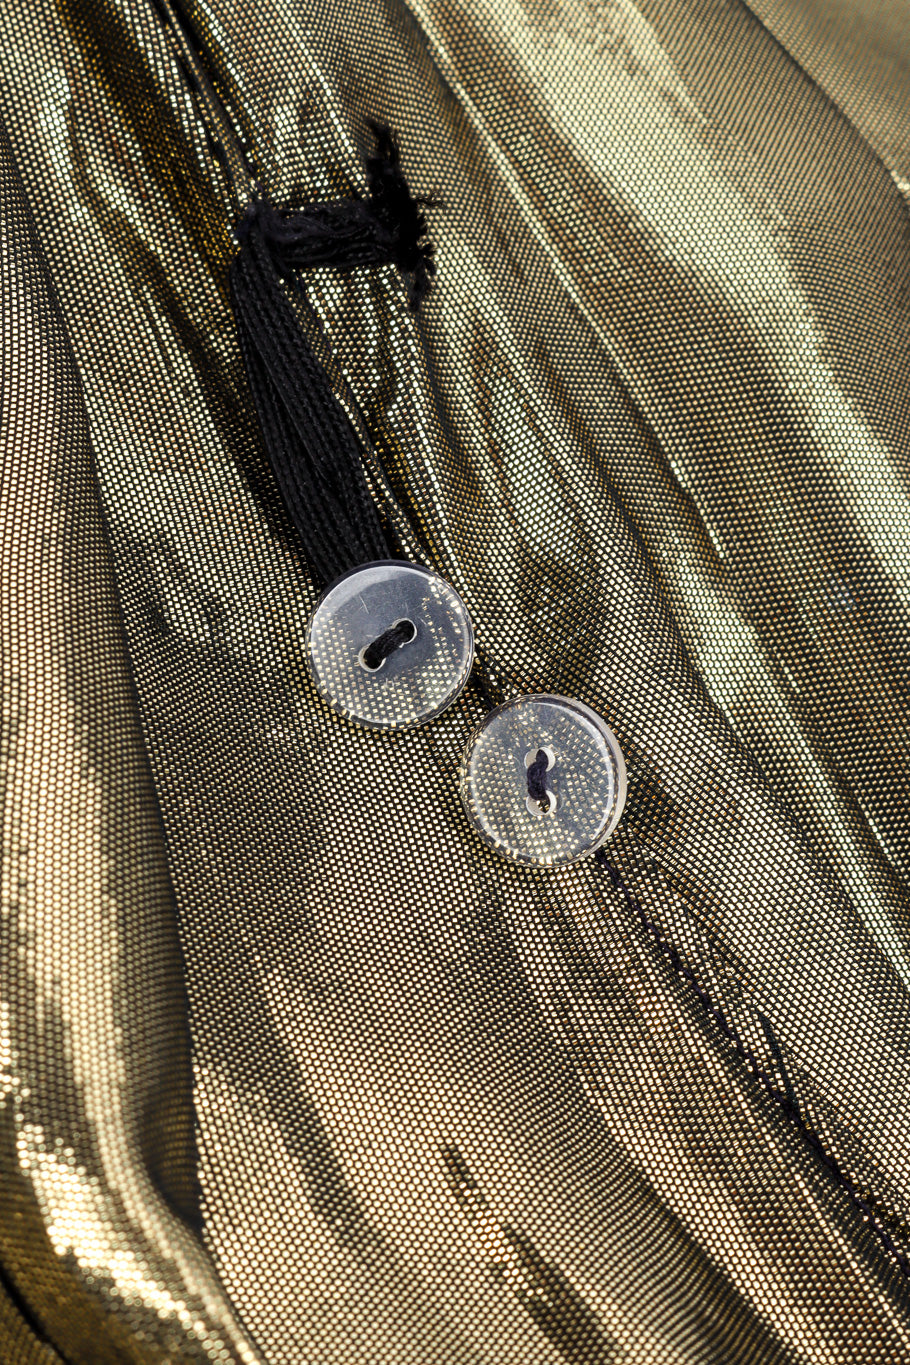 Vintage Holly's Harp Metallic Silk Wrap Dress interior button closeup @recessla